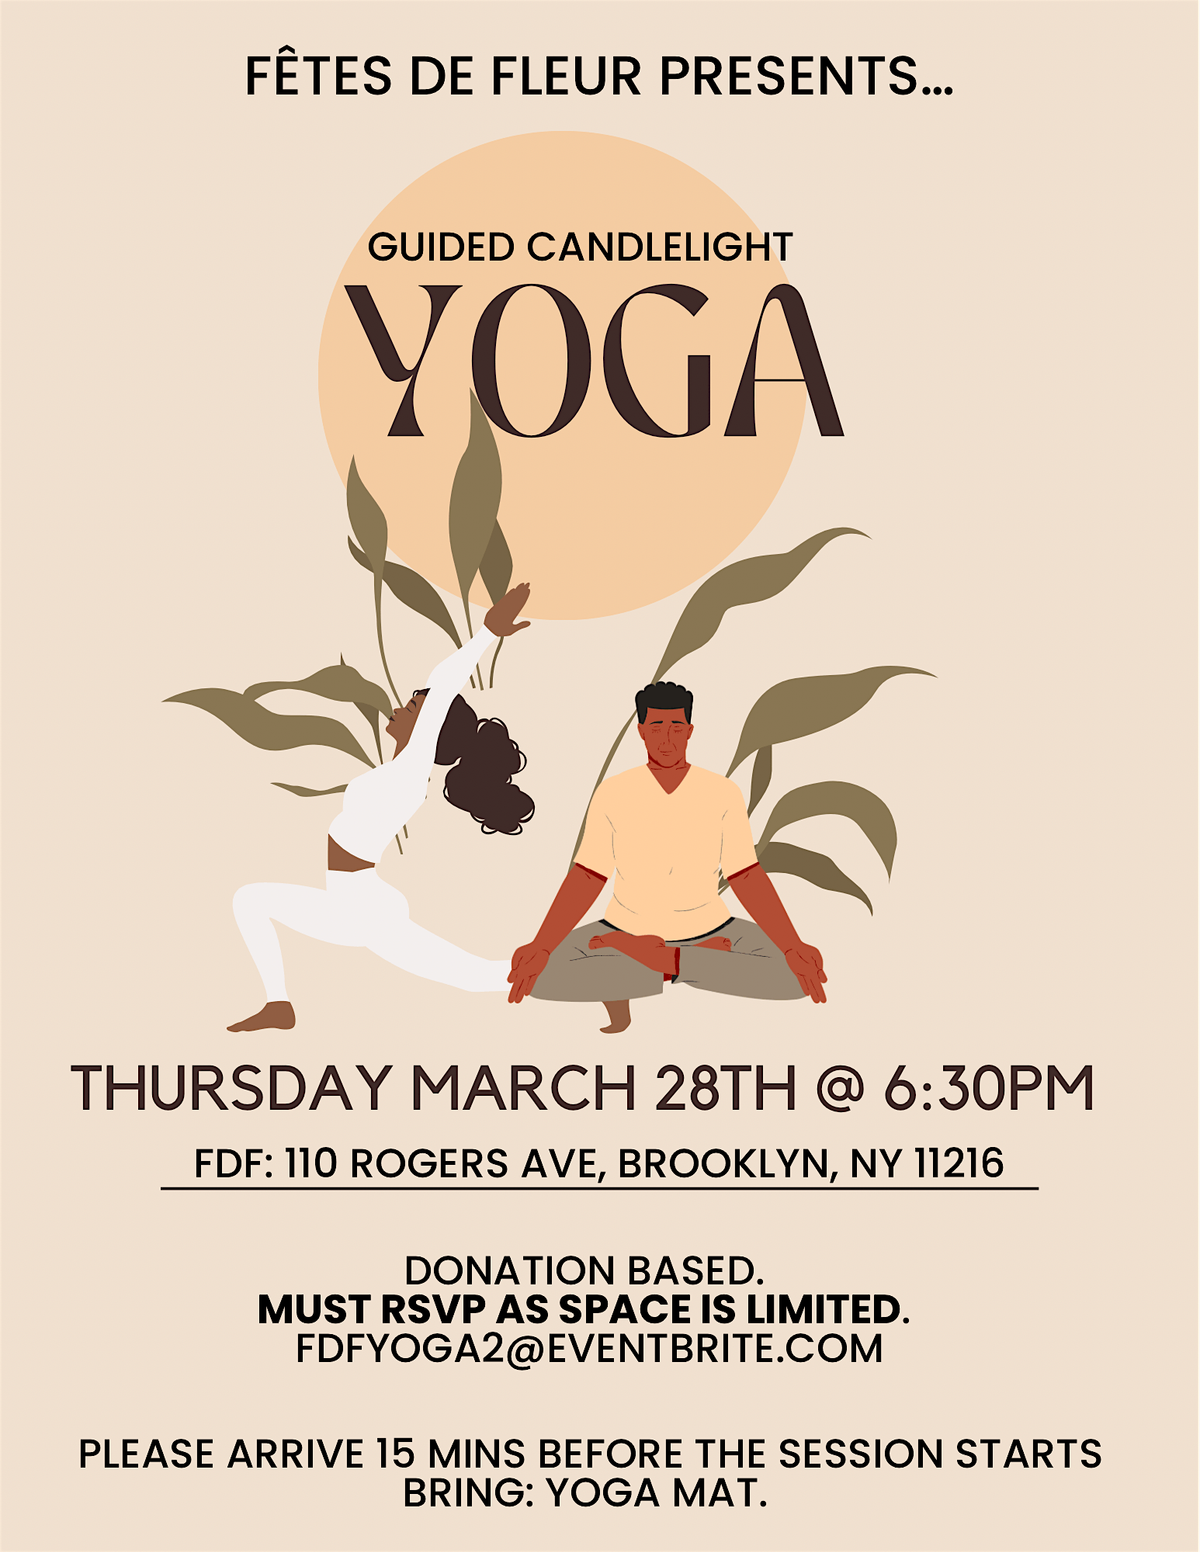 Guided Candlelight Yoga at F\u00eates de Fleur